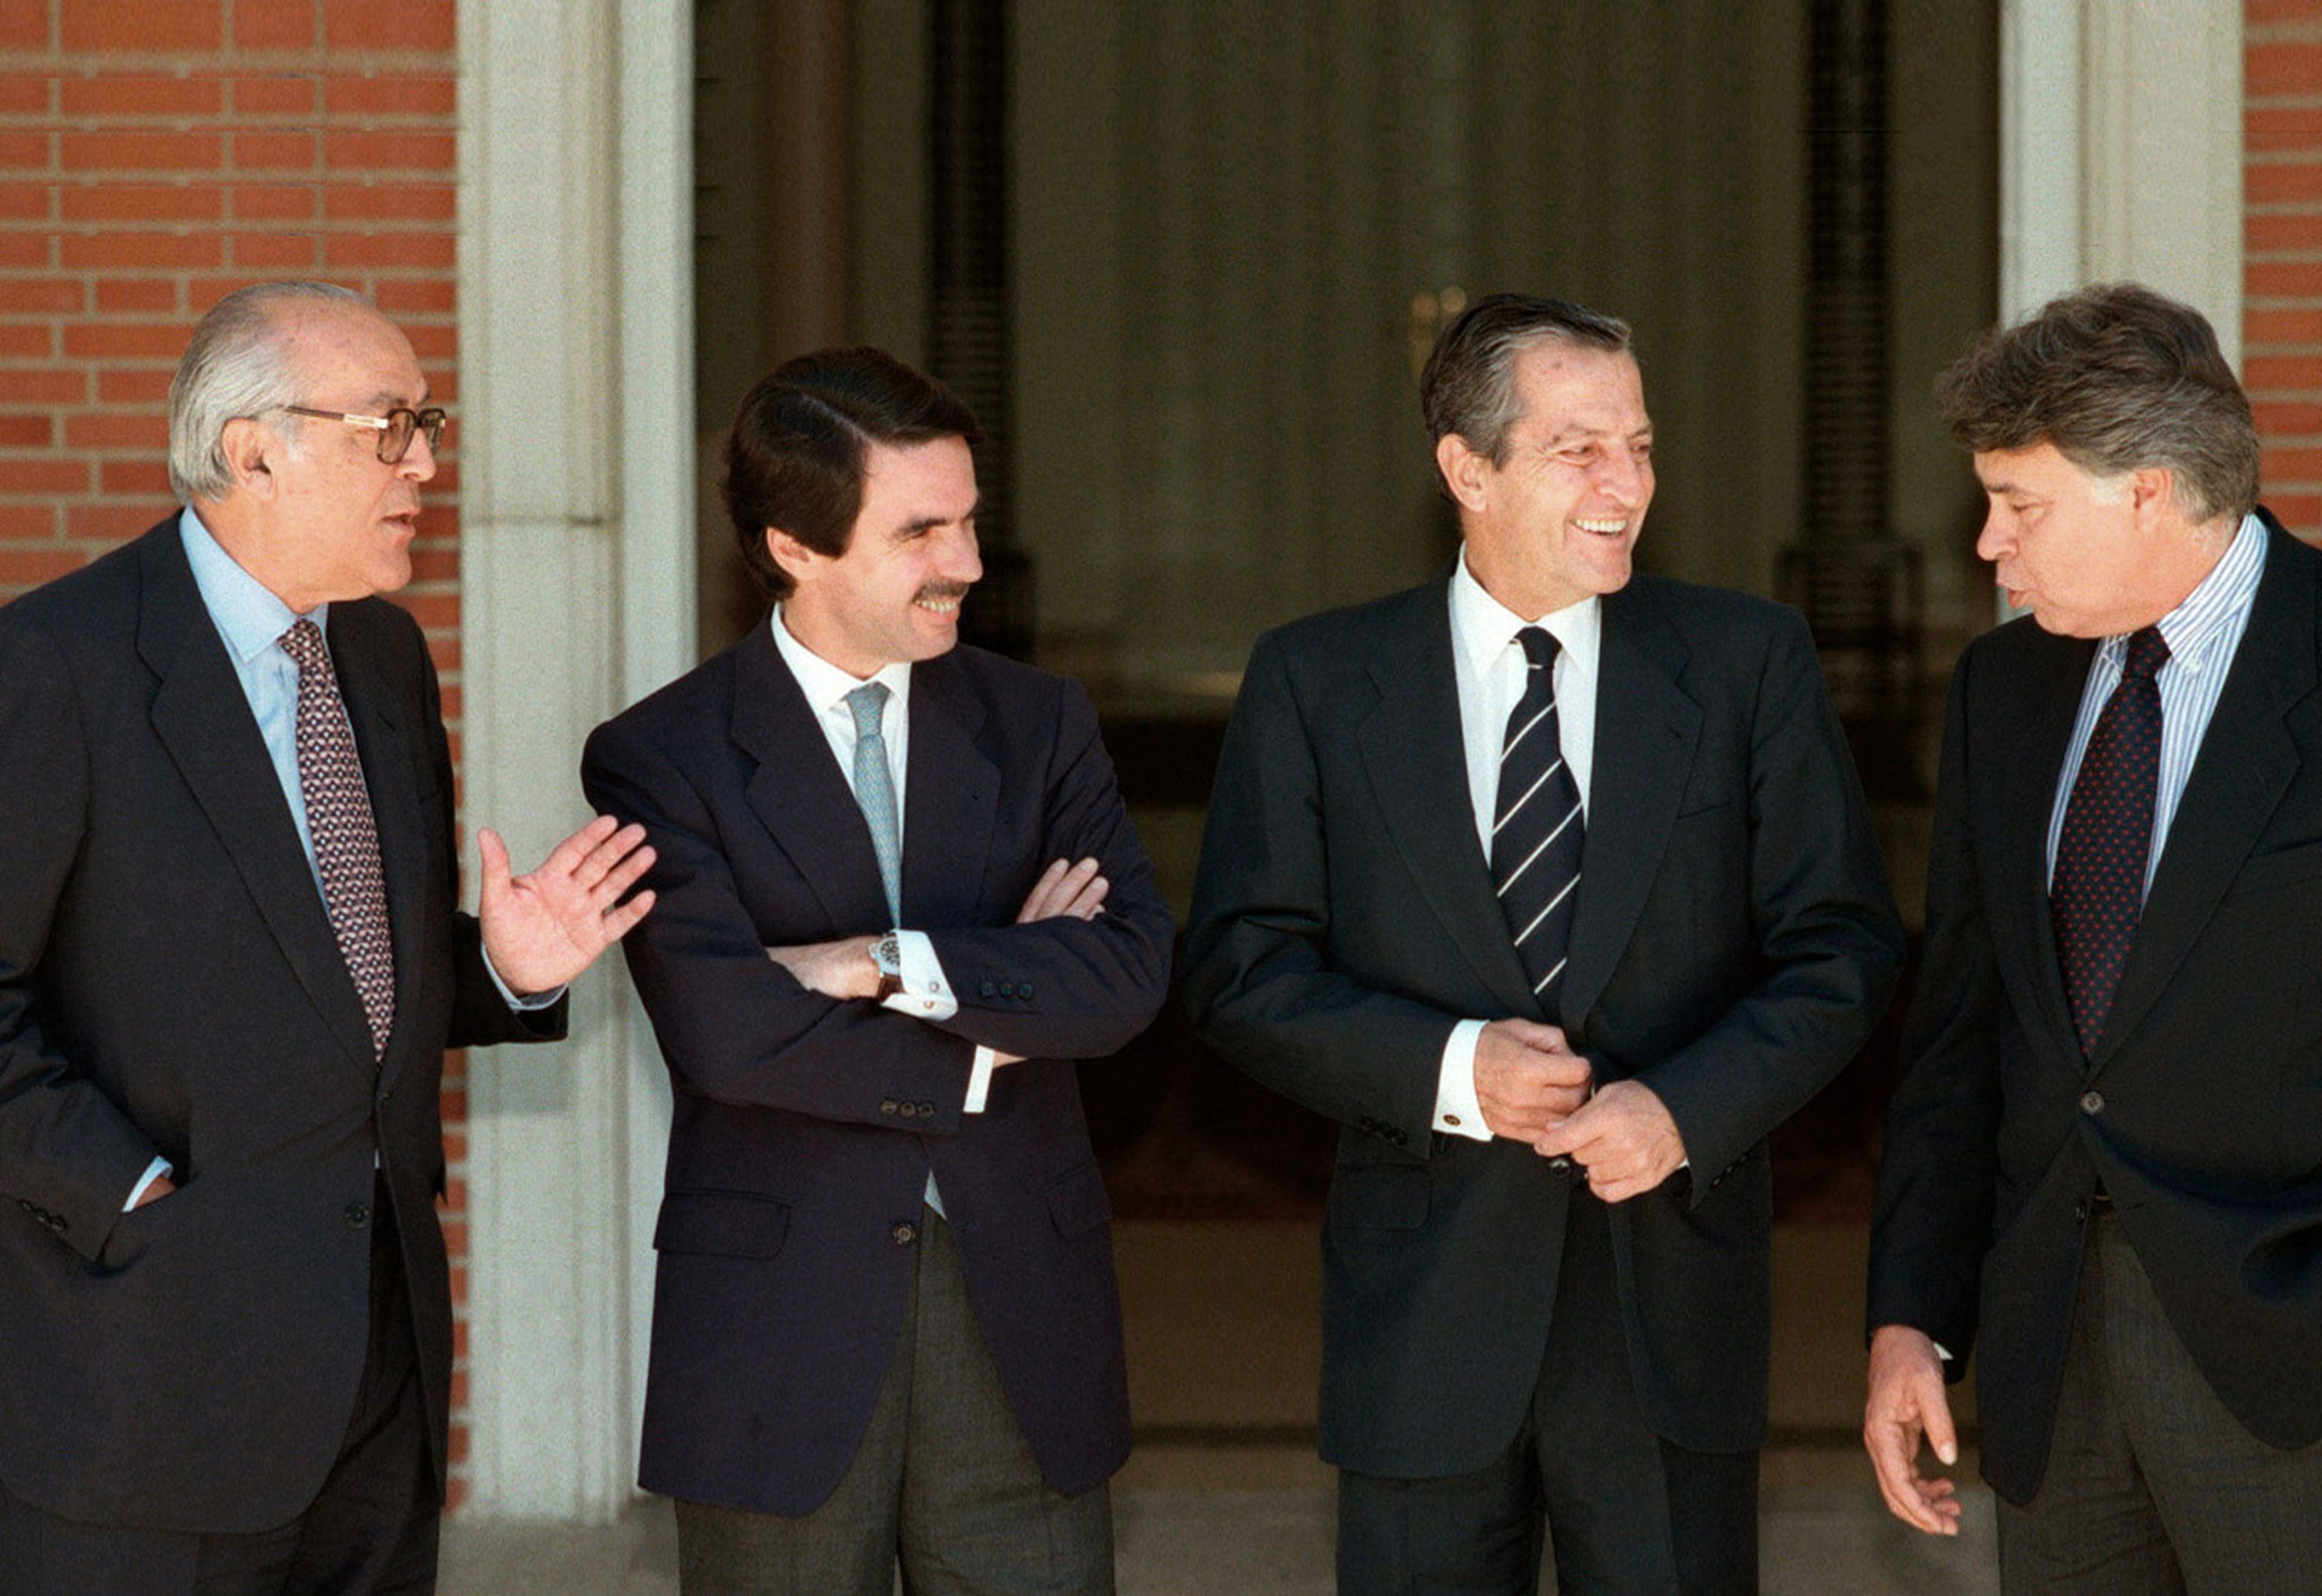 Leopoldo Calvo Sotelo, José María Aznar, Adolfo Suárez y Felipe González en una imagen de archivo